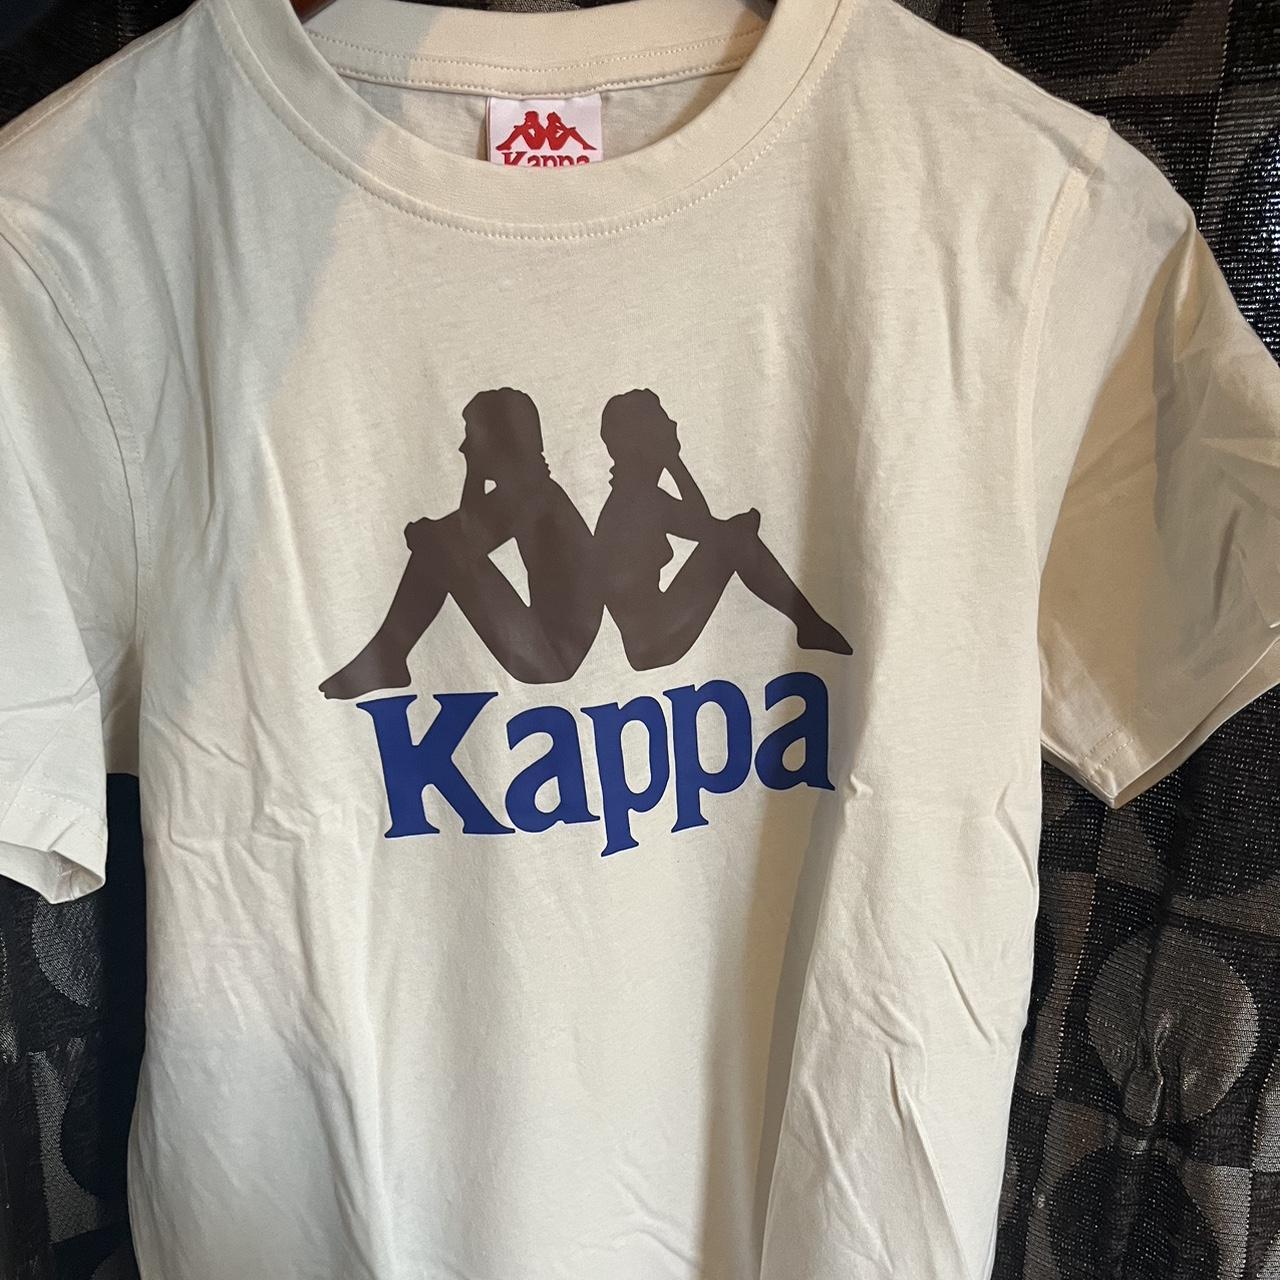 Kappa Clothing Canada - Kappa Fashion Brand